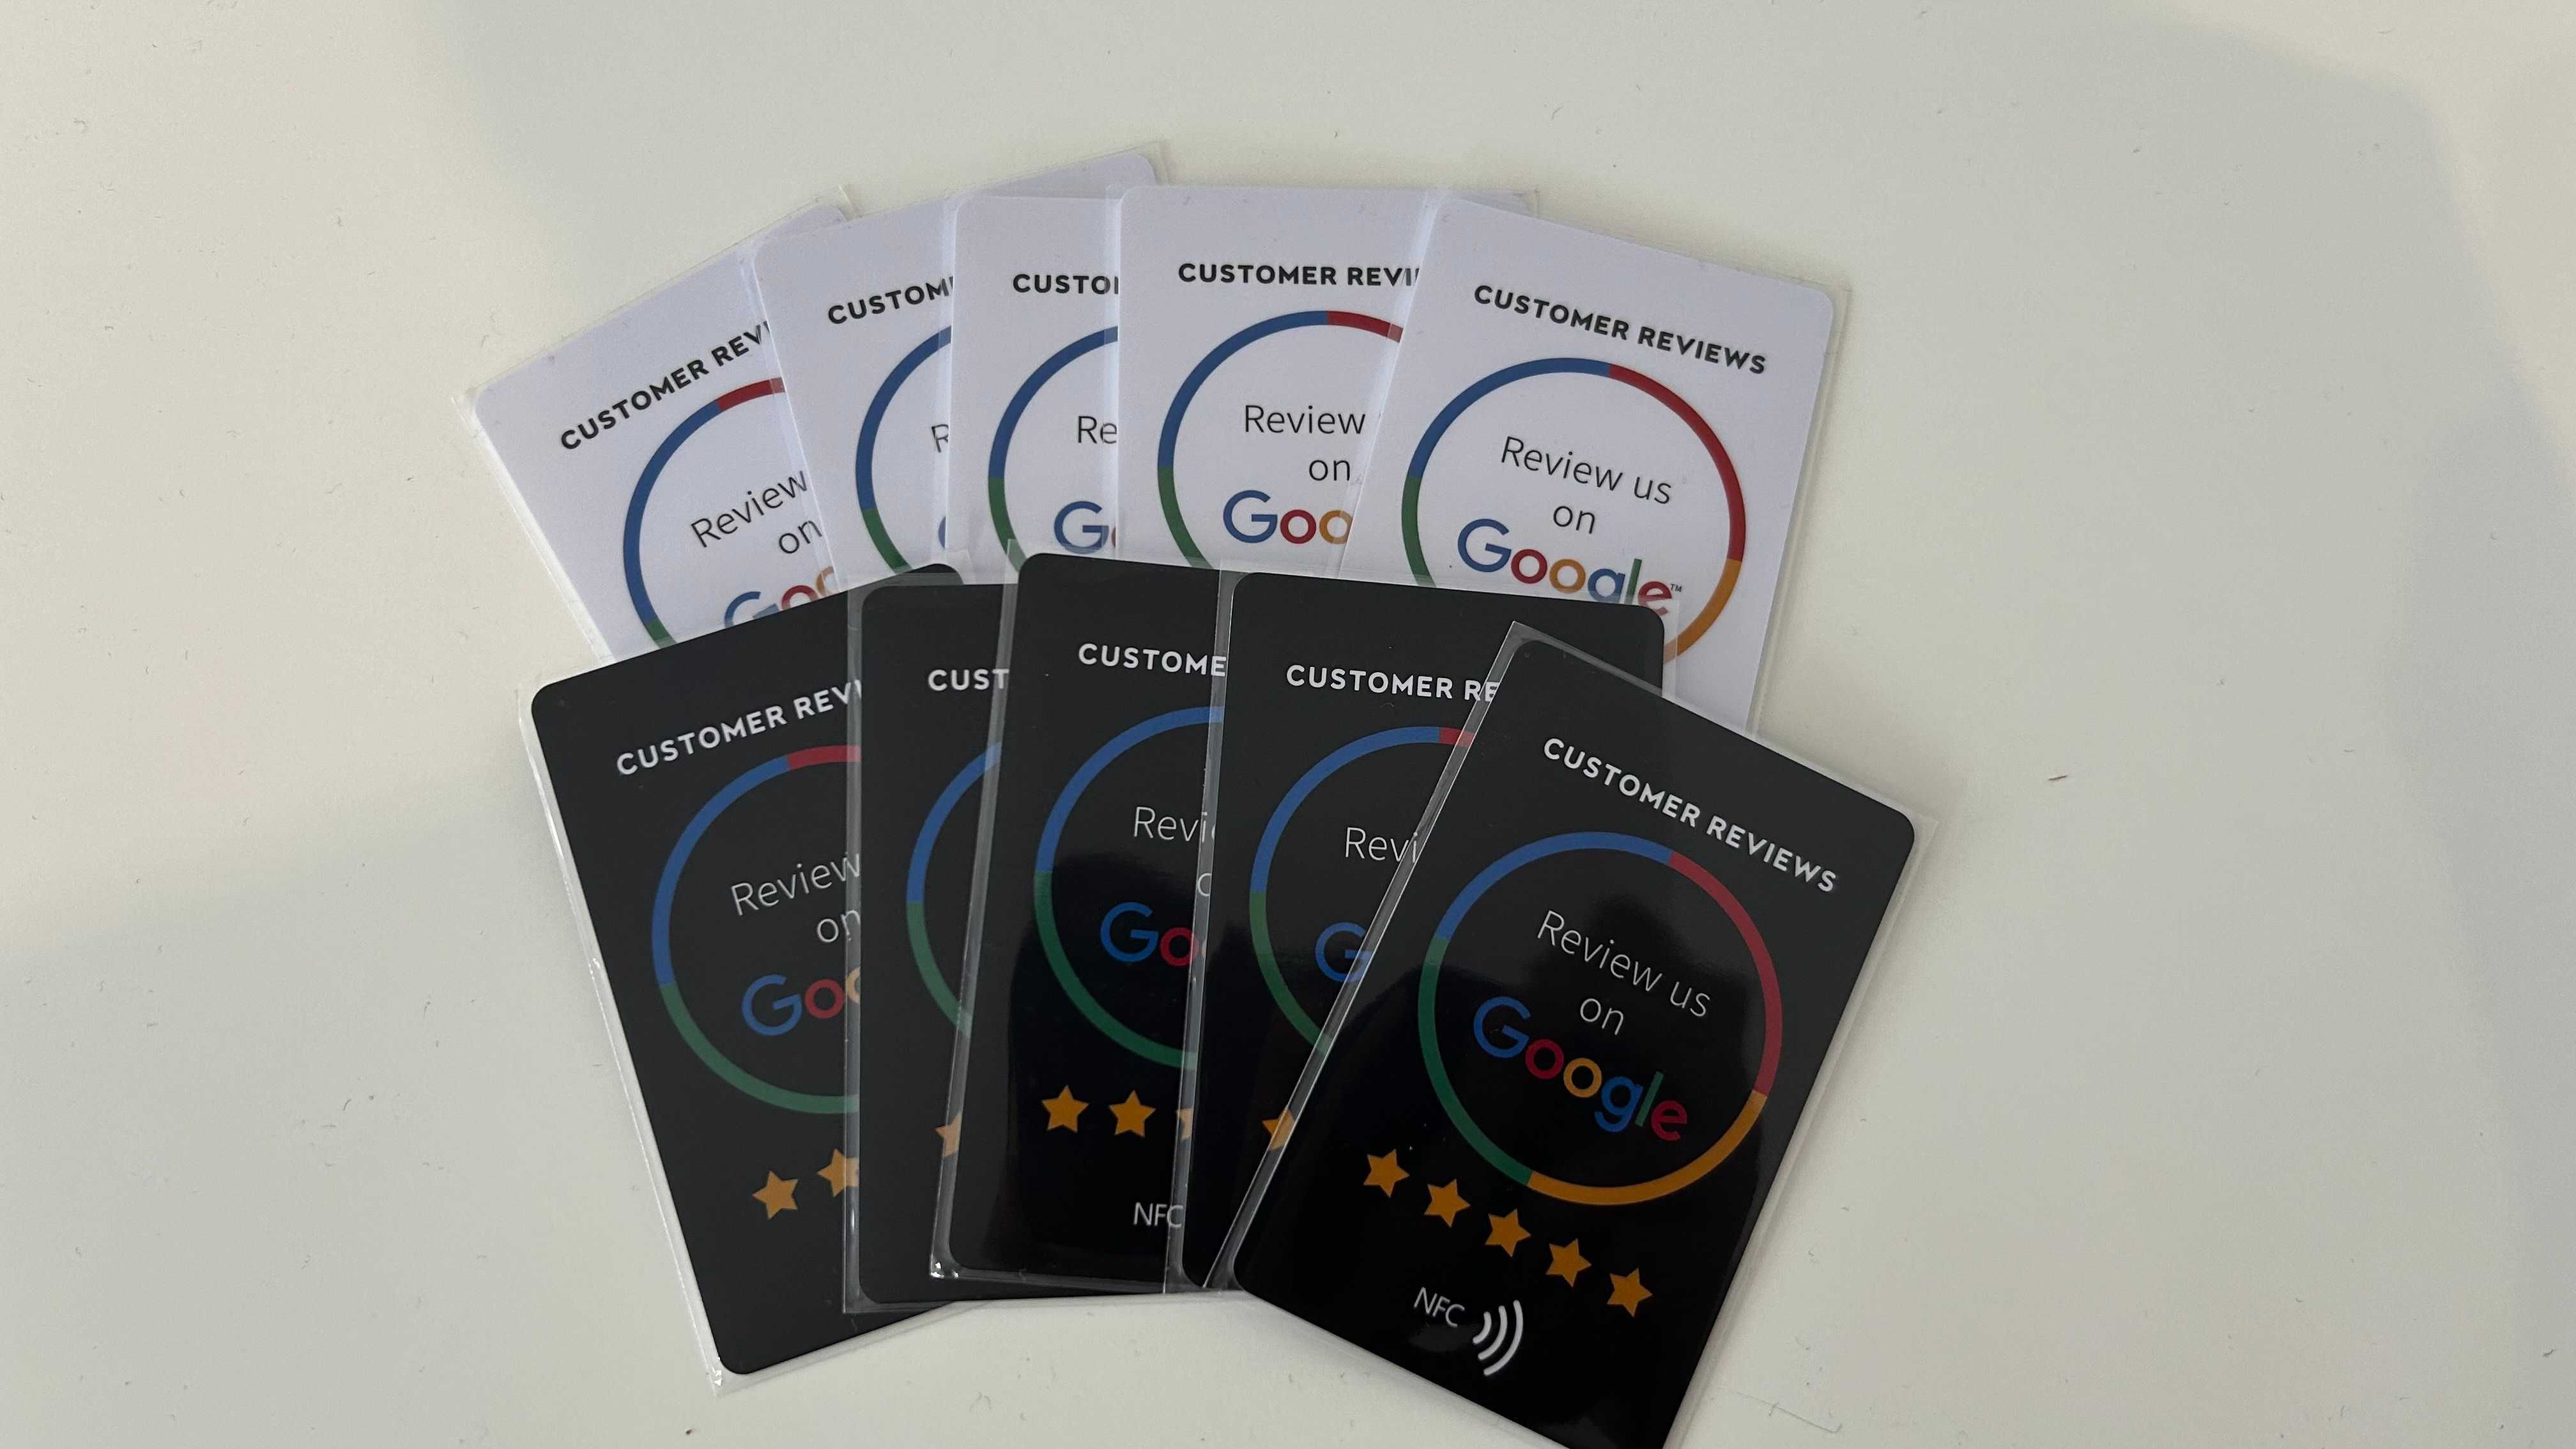 Stand, karta, wizytówka elektroniczna NFC  opinie w Google